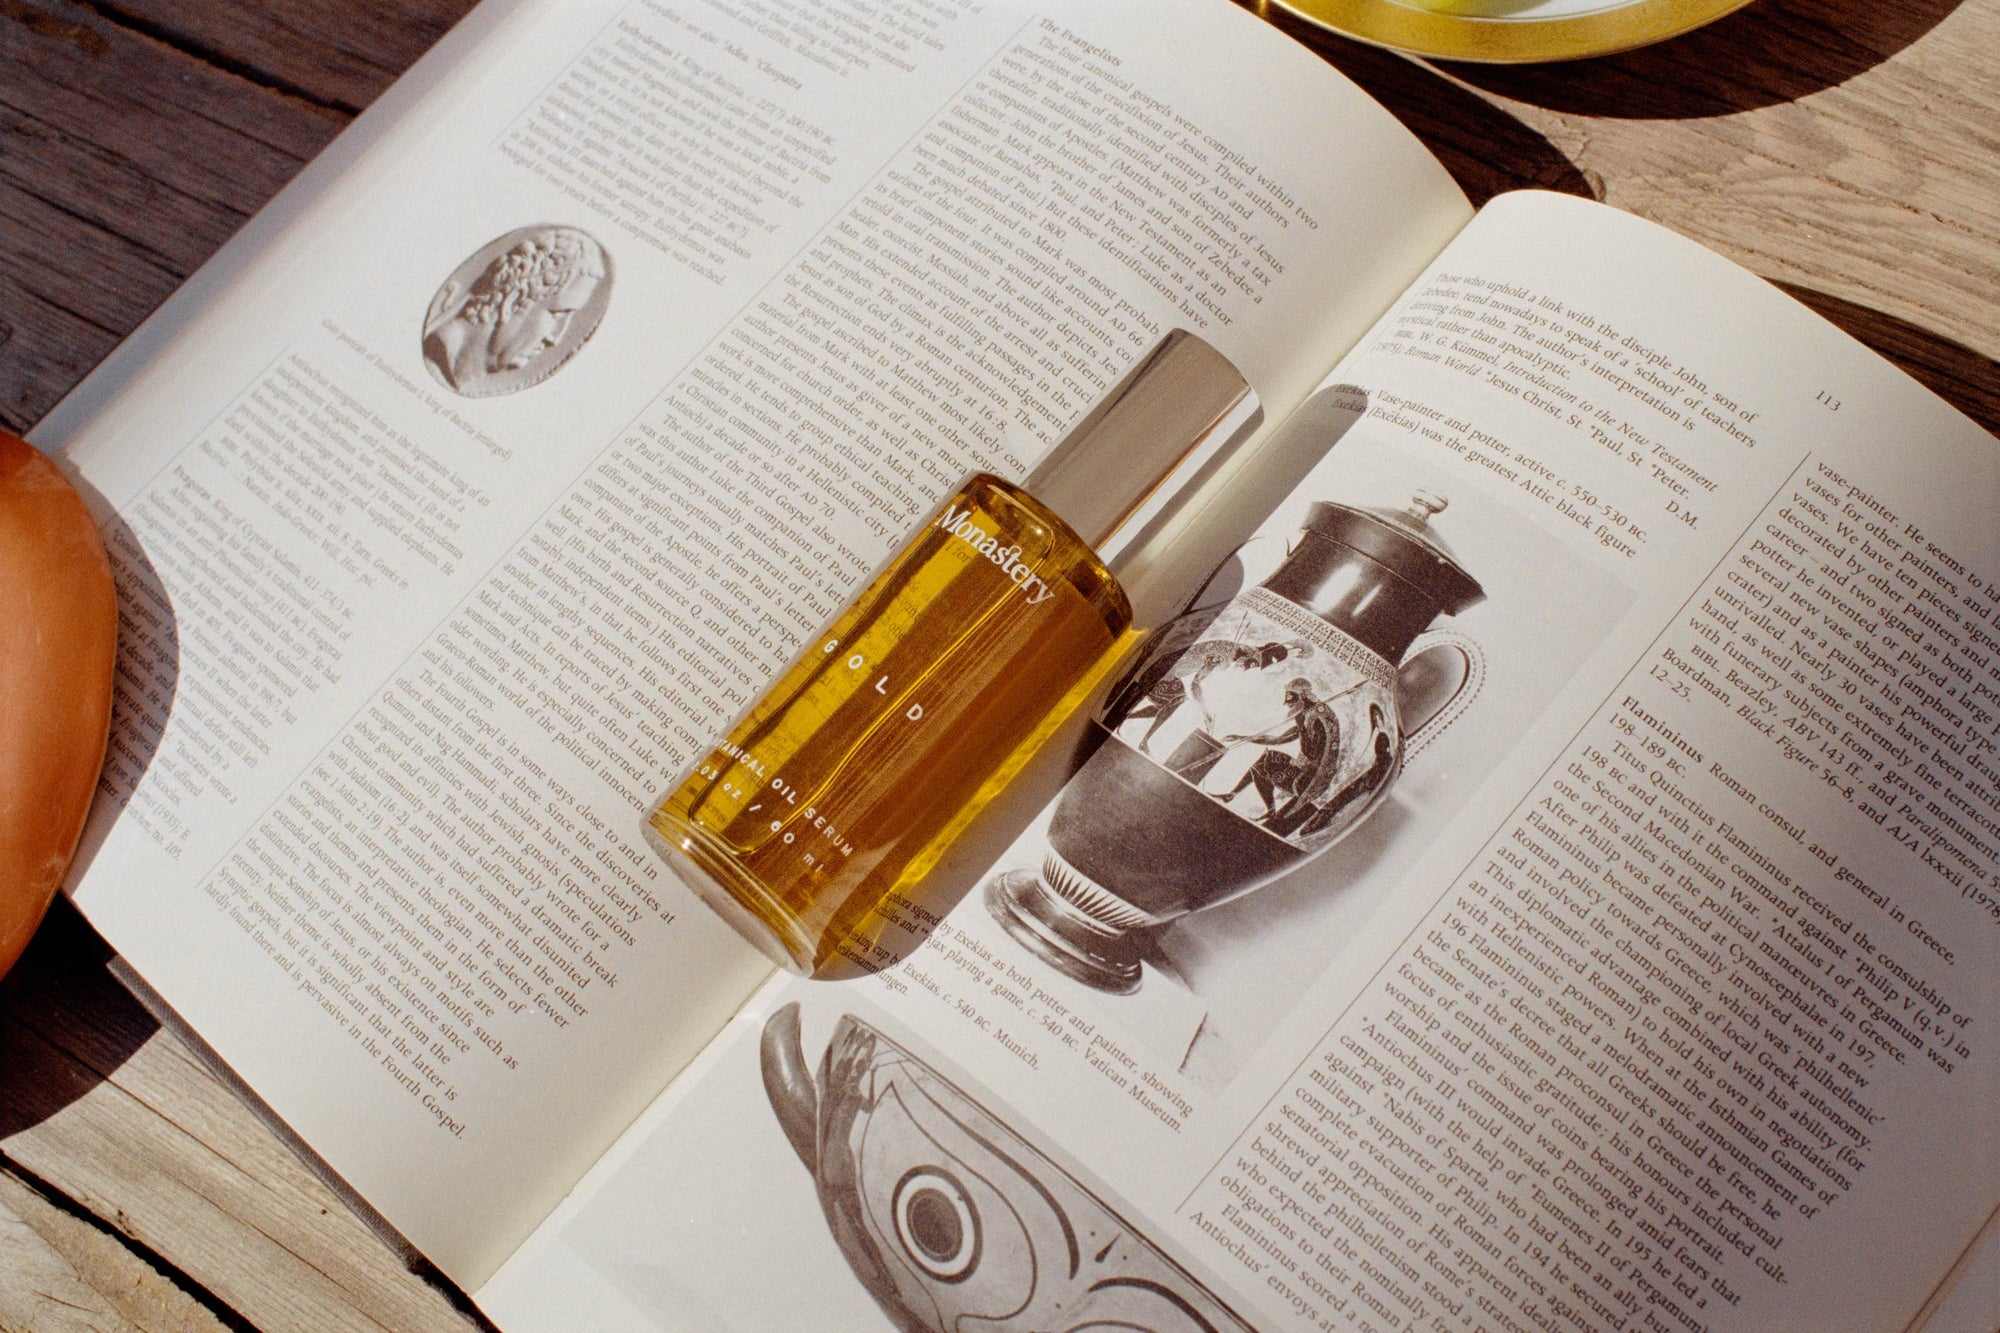 Monastery Gold Serum Flasche liegt auf aufgeschlagenem Buch auf einem Holztisch.